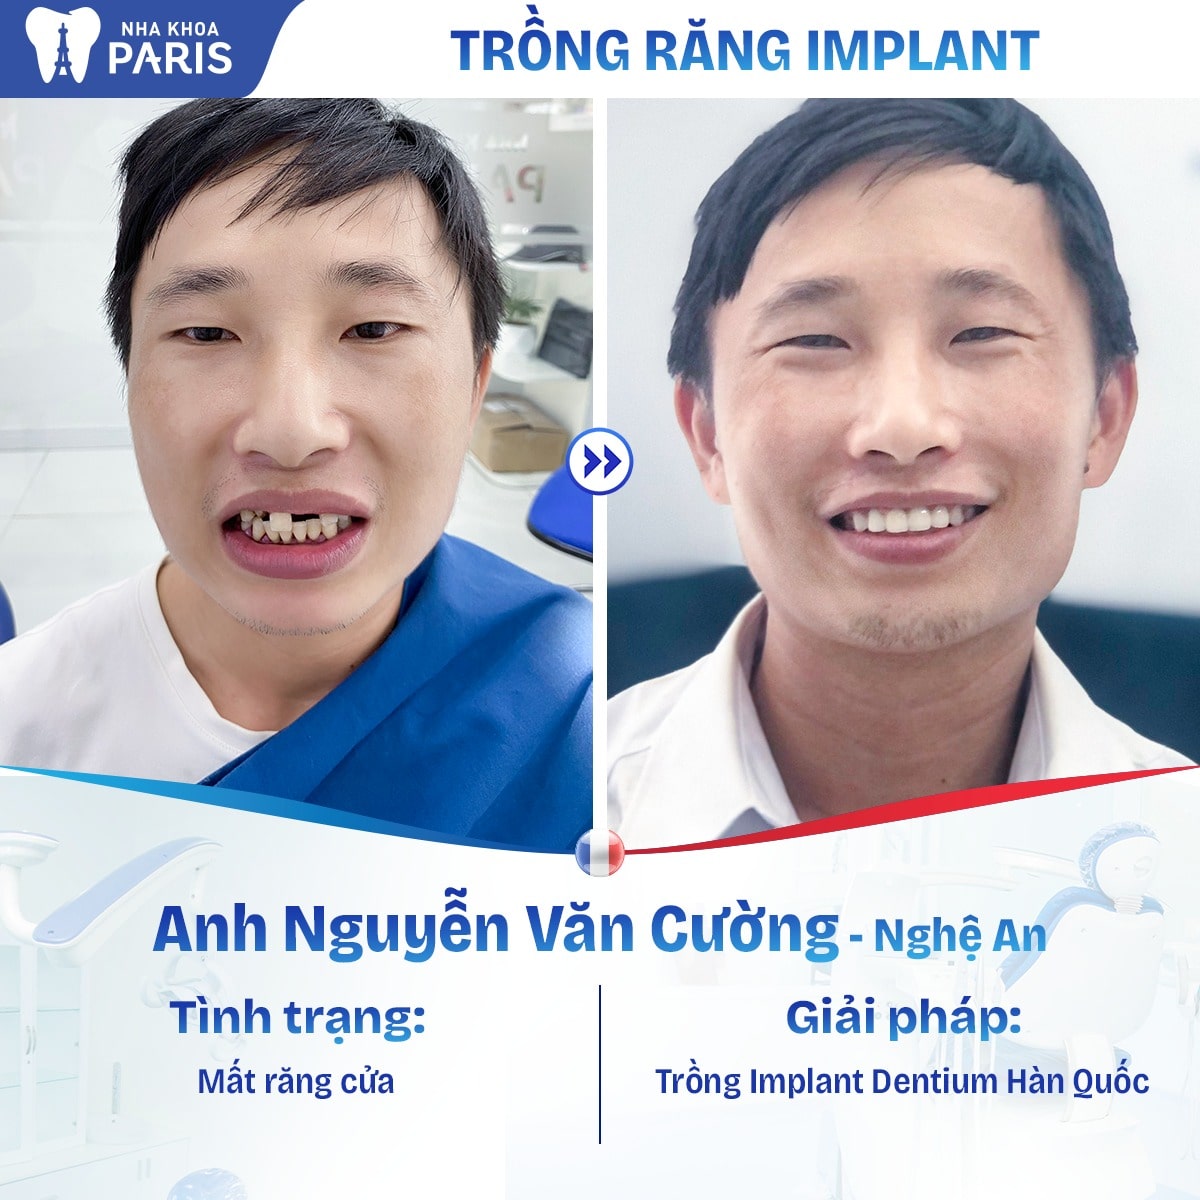 Anh Nguyễn Văn Cường sau khi thực hiện phương pháp trồng Implant Dentium Hàn Quốc